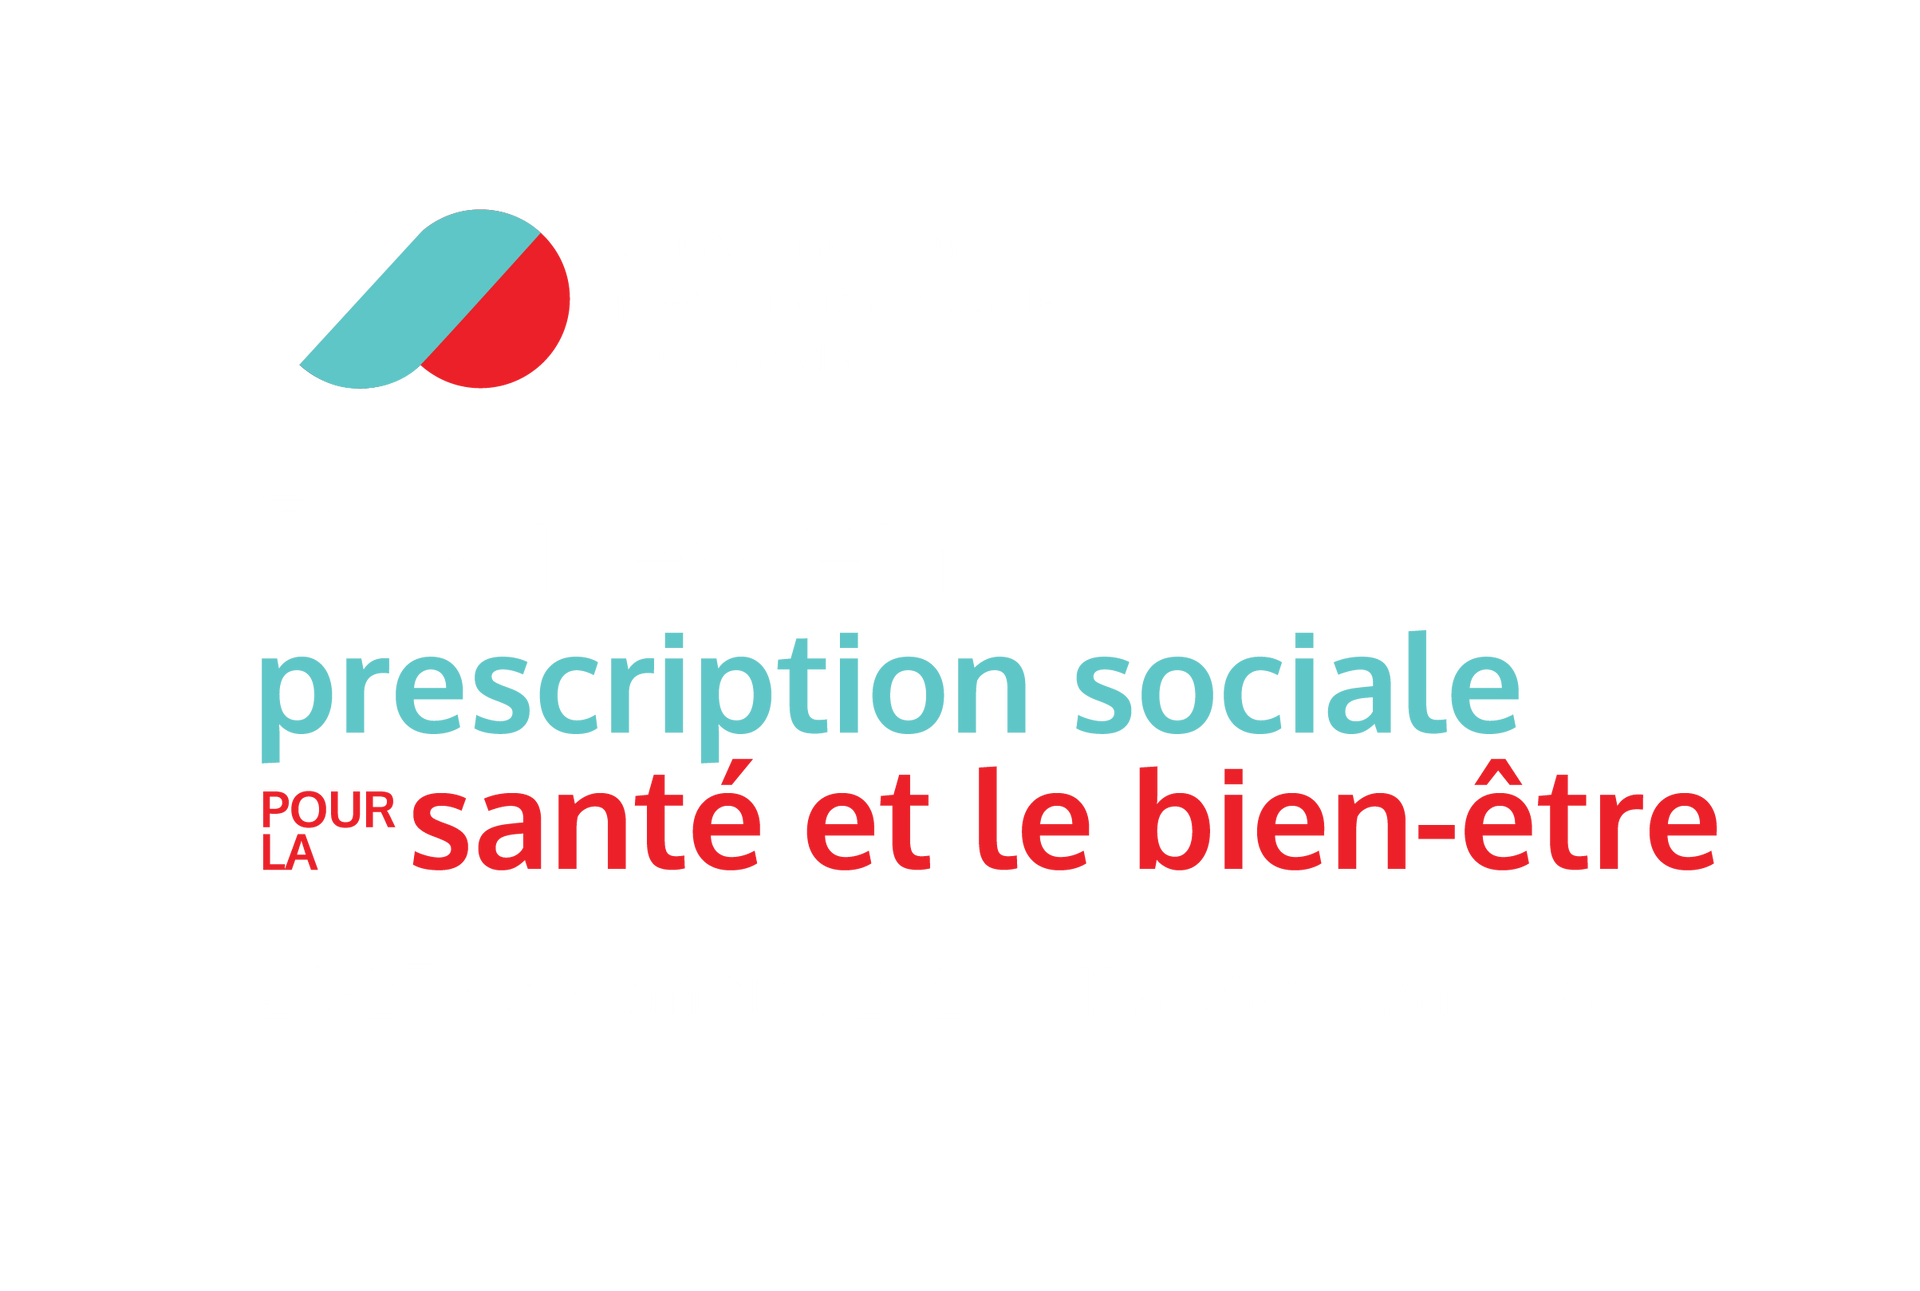 Canada’s Social Prescribing Conference - Advancing Social Prescribing for Health & Wellbeing